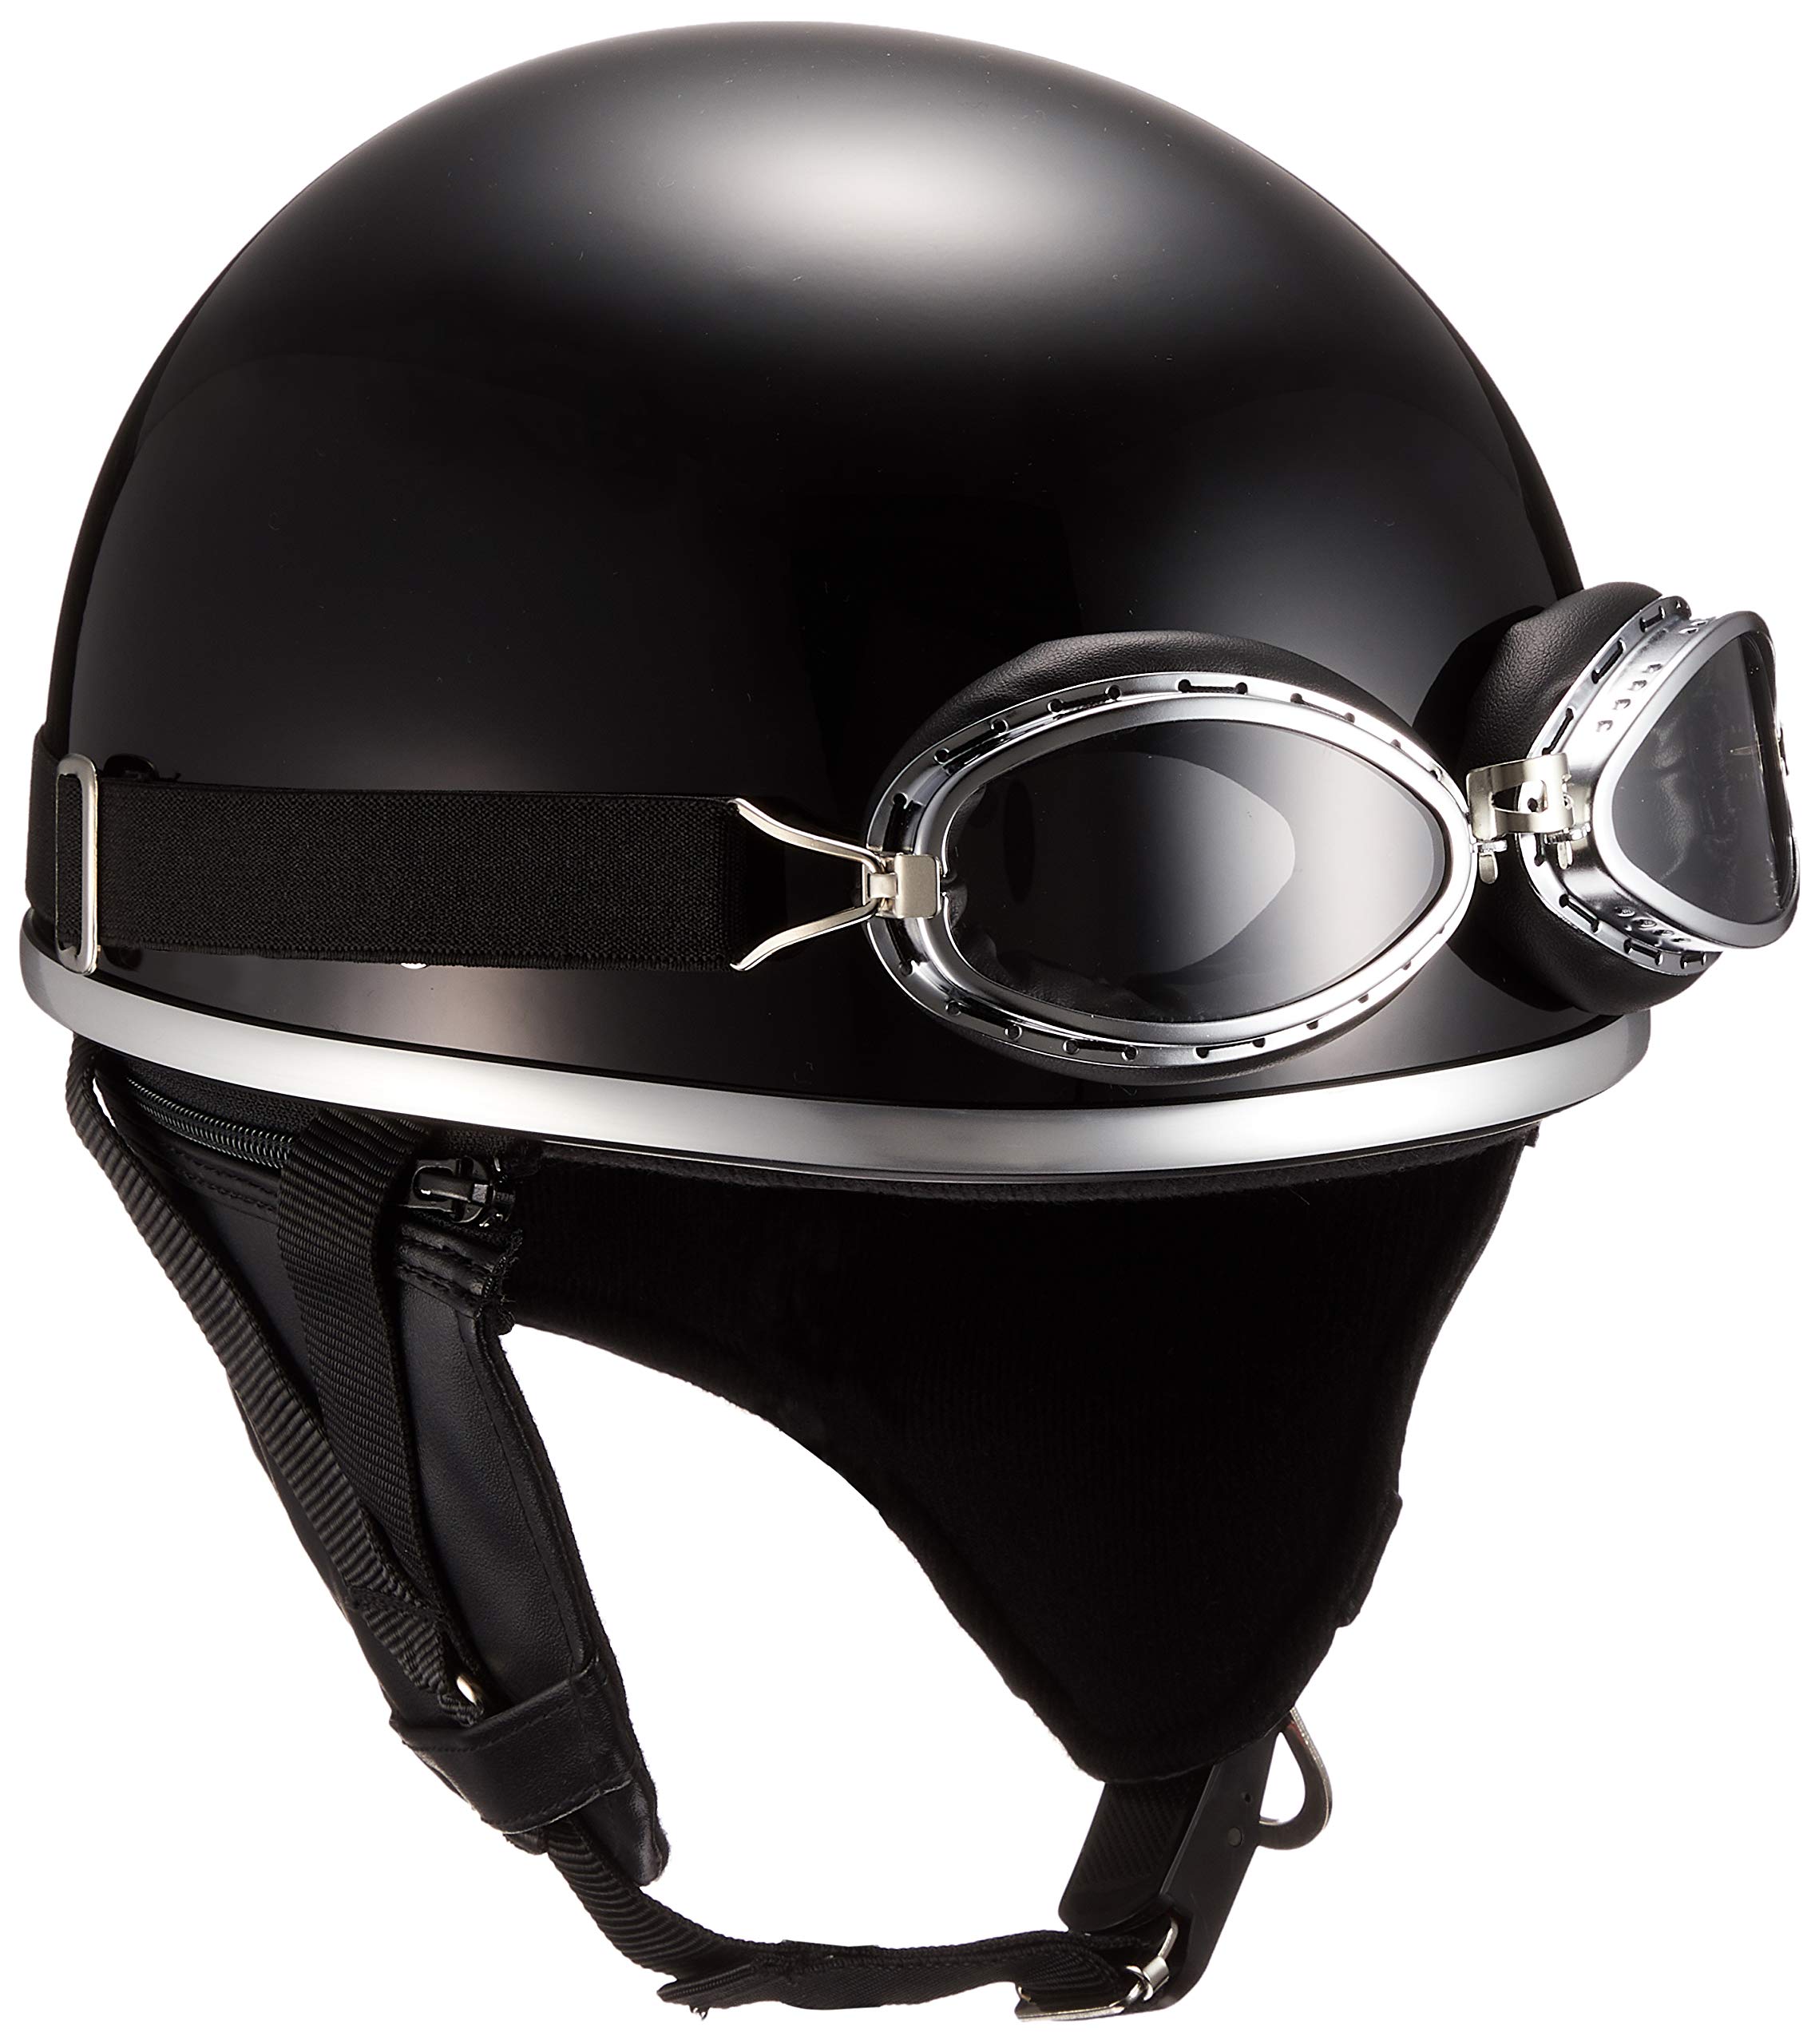 バイクパーツセンター ヘルメット ハーフ 半帽 ゴーグル付 ブラック フリーサイズ (頭囲 57cm~59cm未満) 7401